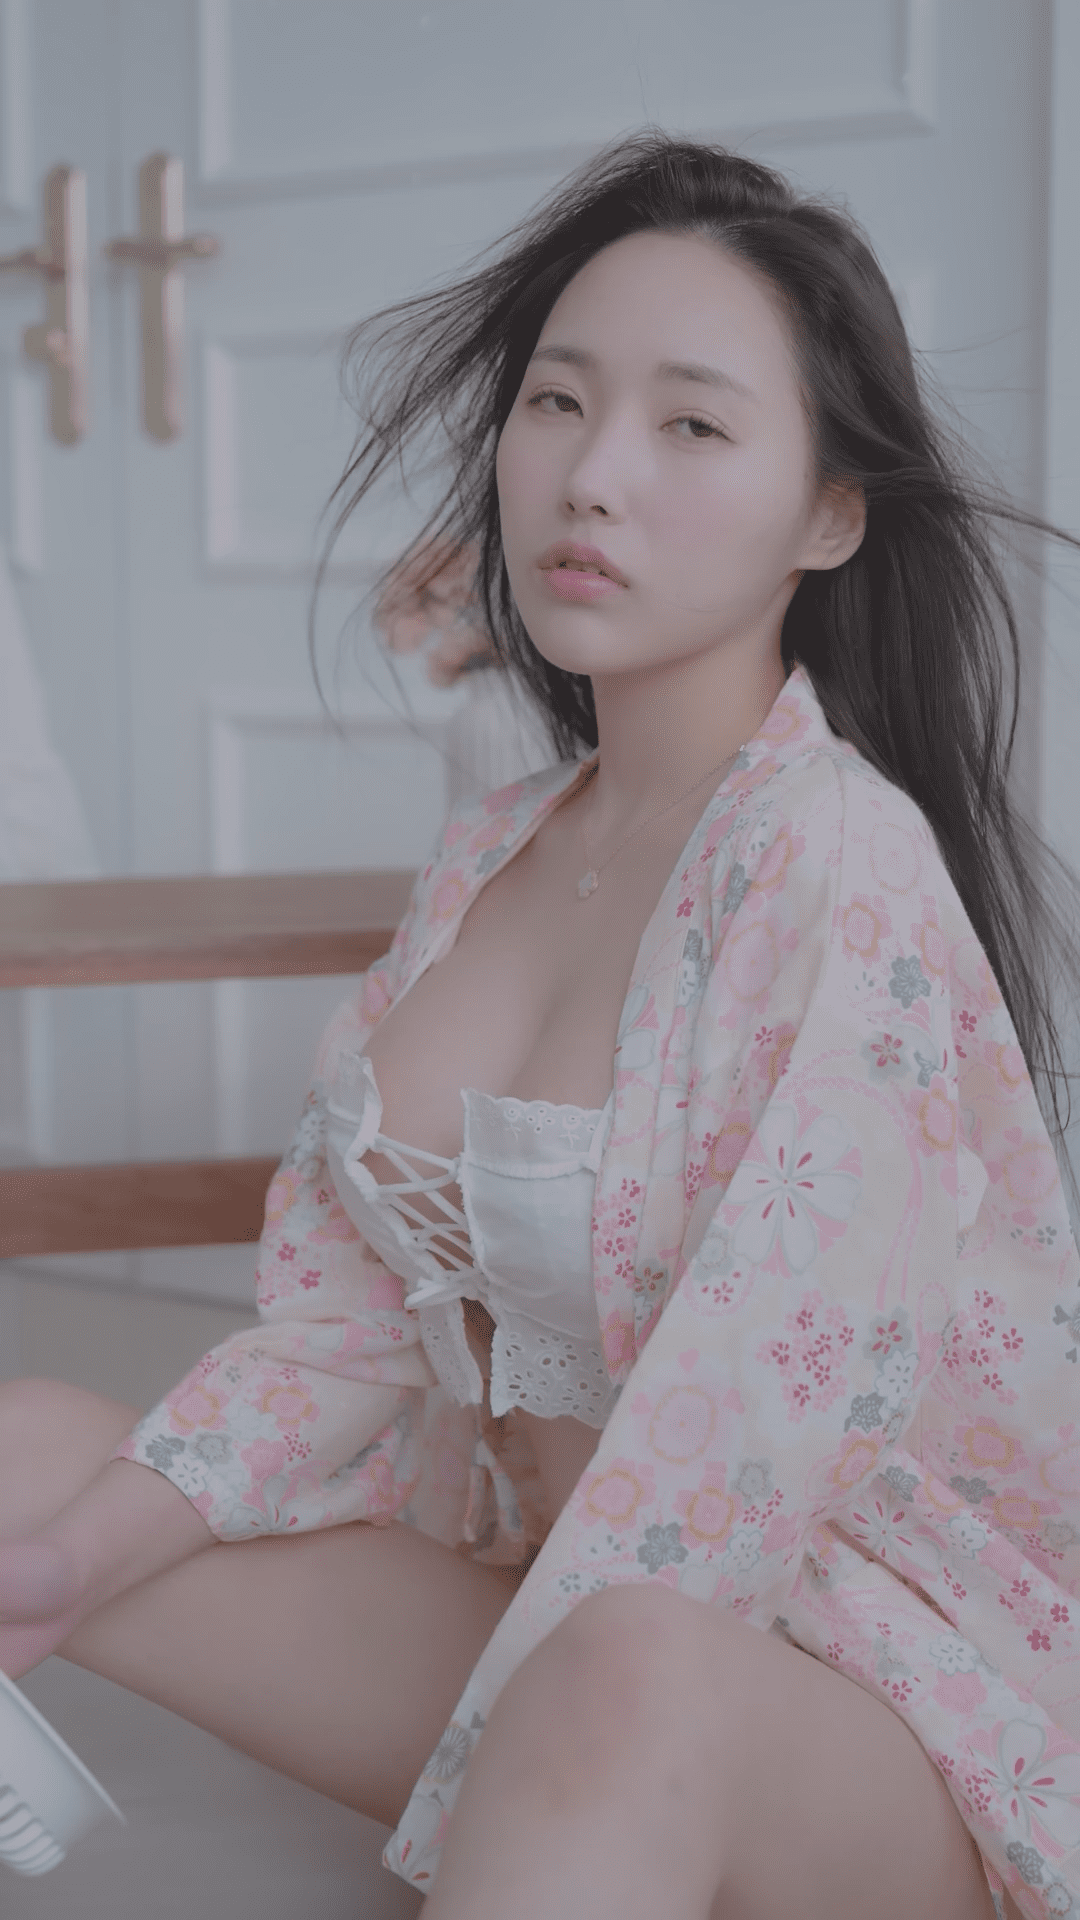 美女模特 YeonHwa 内衣造型穿搭写真视频【4V/117MB】